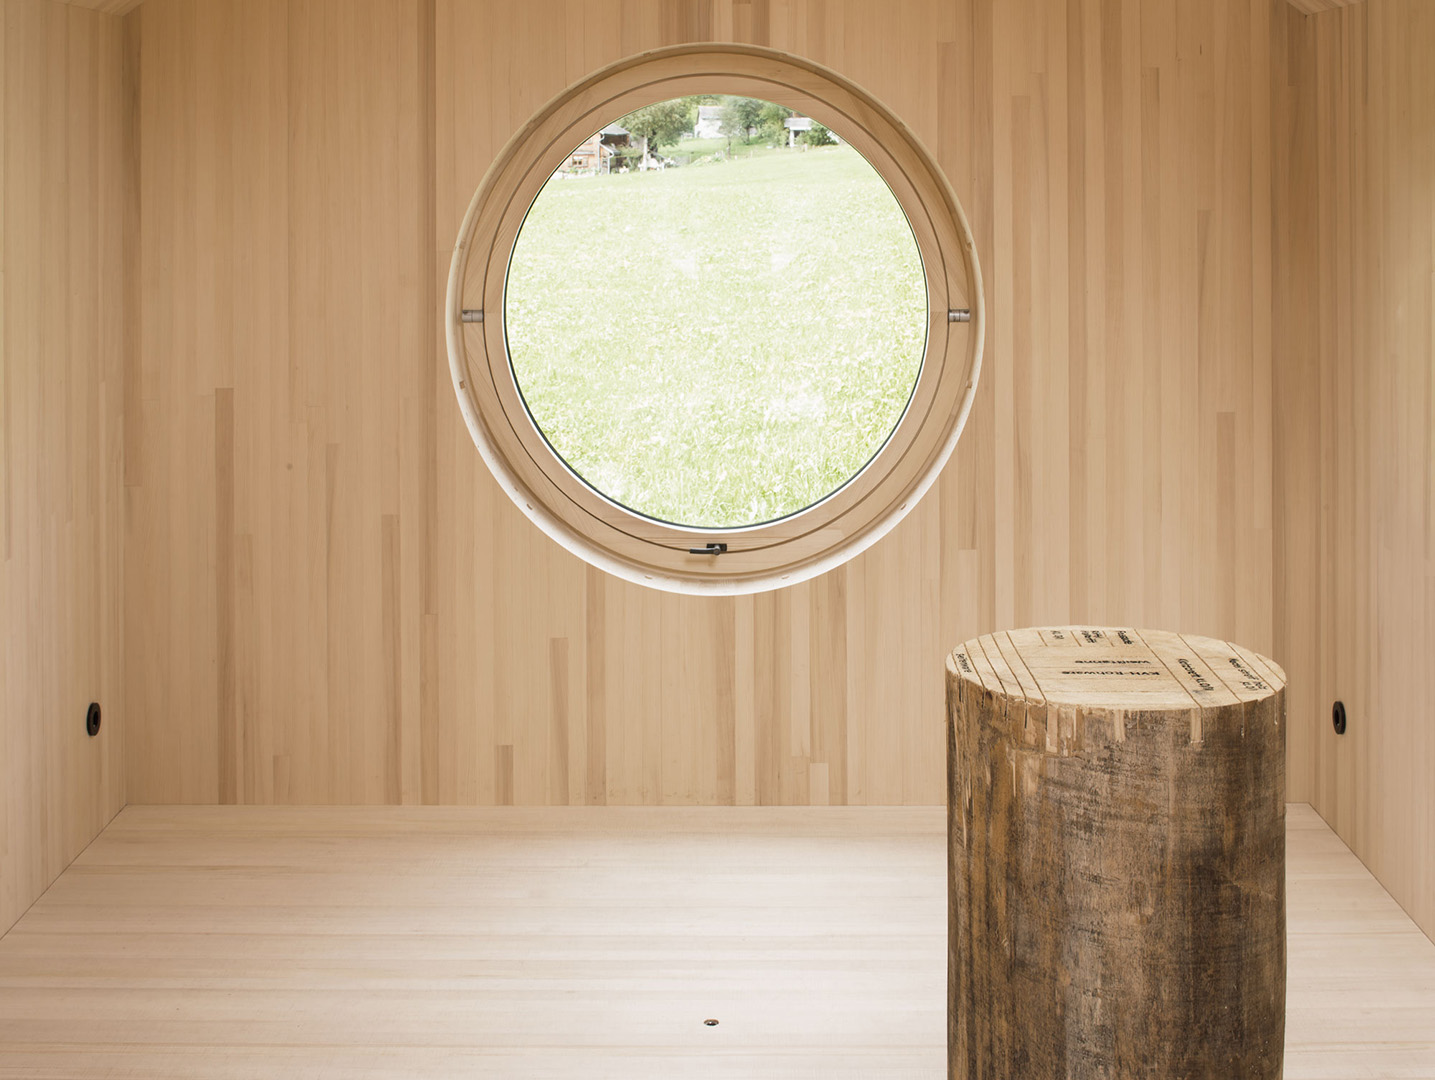 Round wooden window